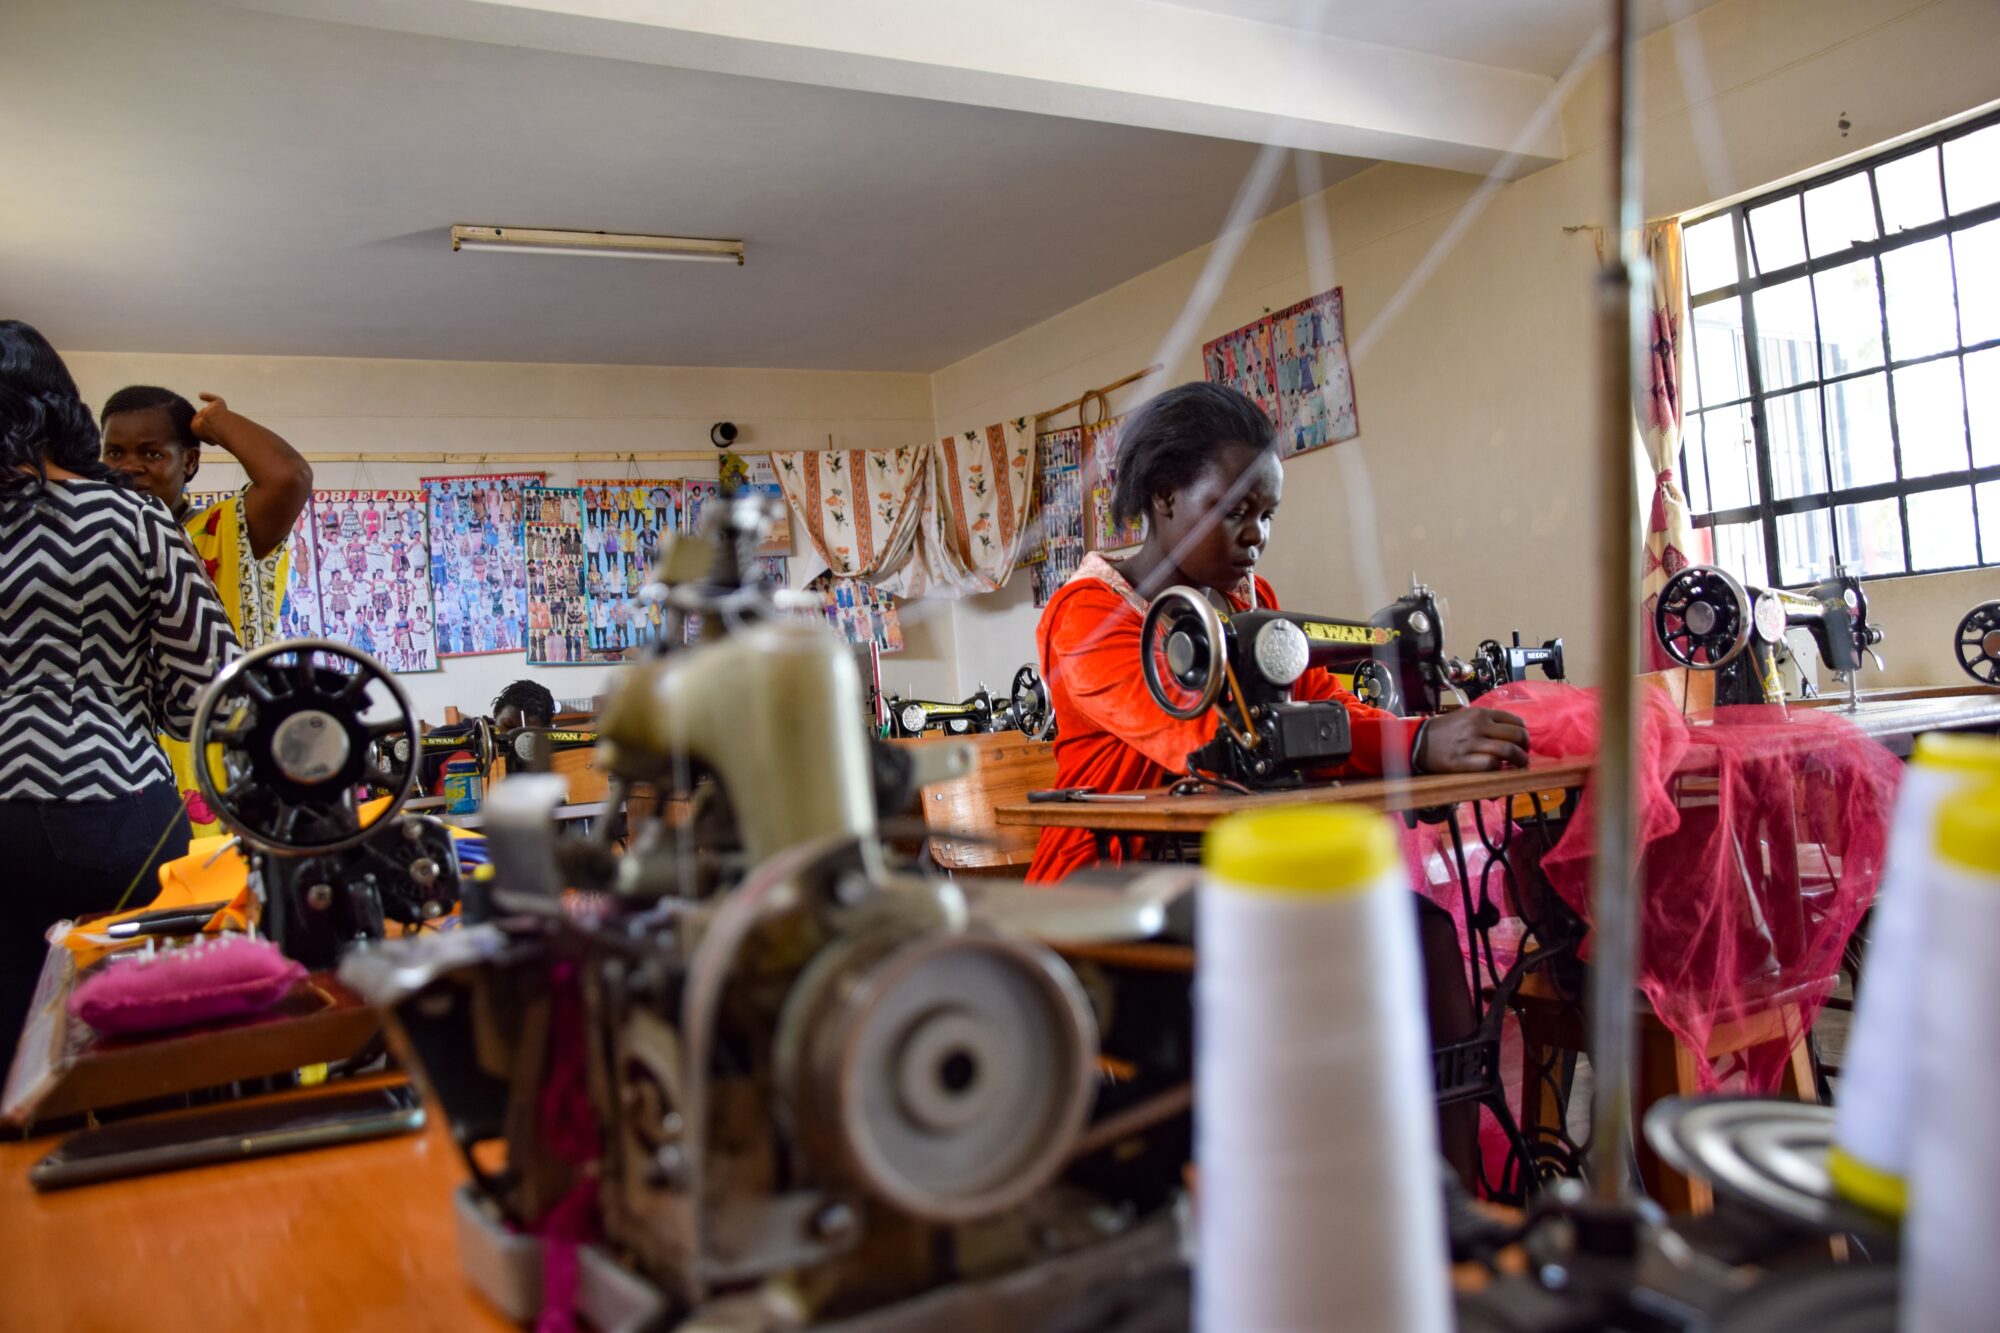 DESARROLLO ECONÓMICOTalleres de costura: 4 iniciativas para la inserción social y laboral de mujeres latinoamericanas